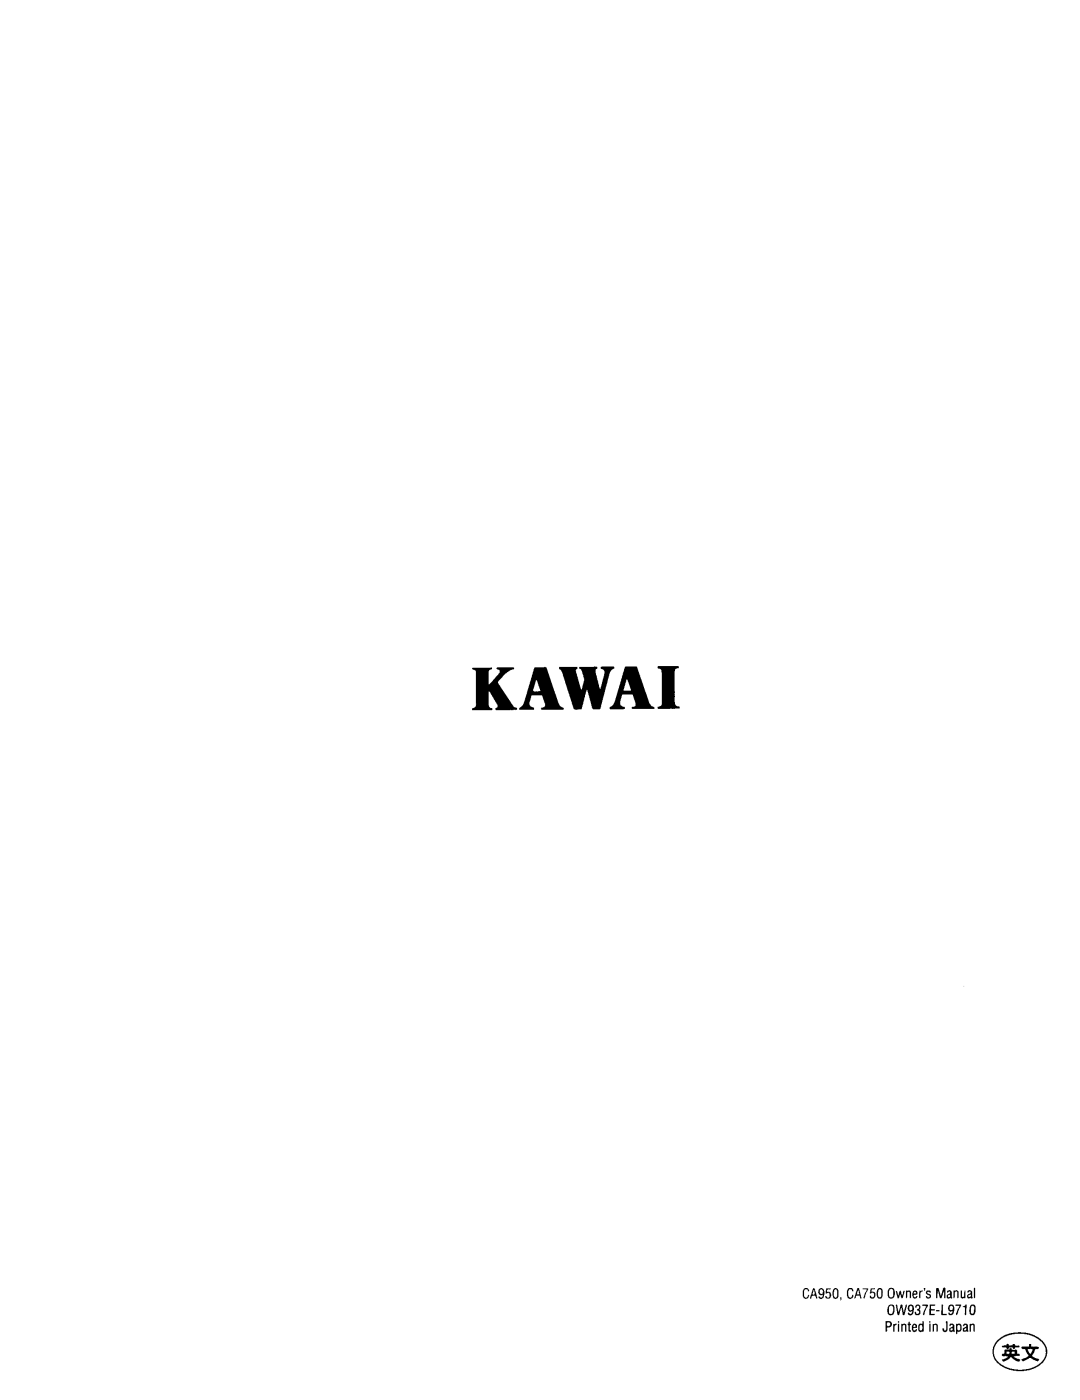 Kawai CA950, CA750 manual 